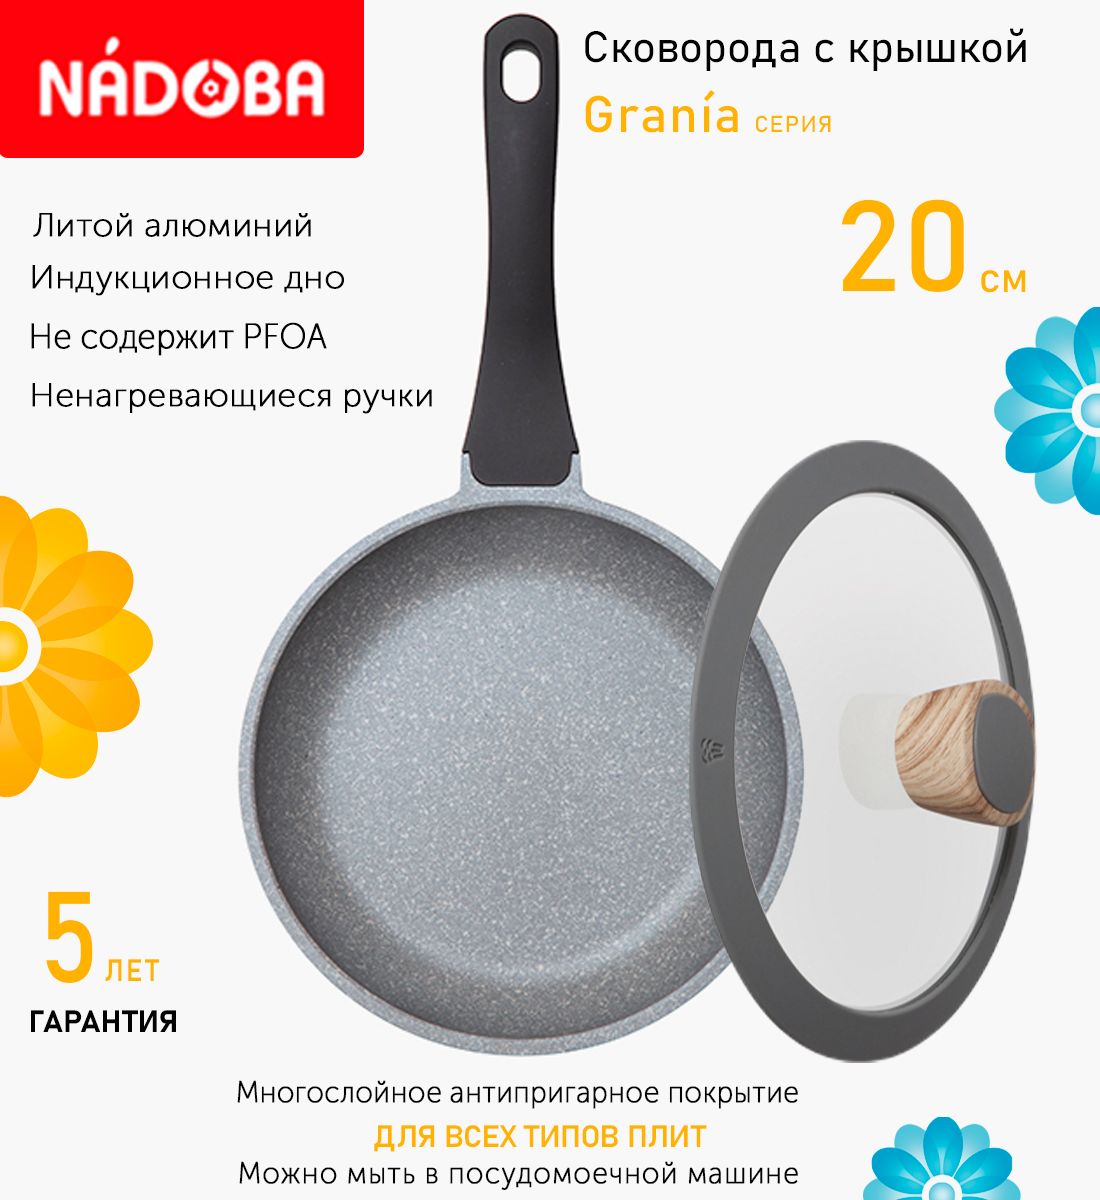 Сковорода с крышкой NADOBA 20 см серия Grania